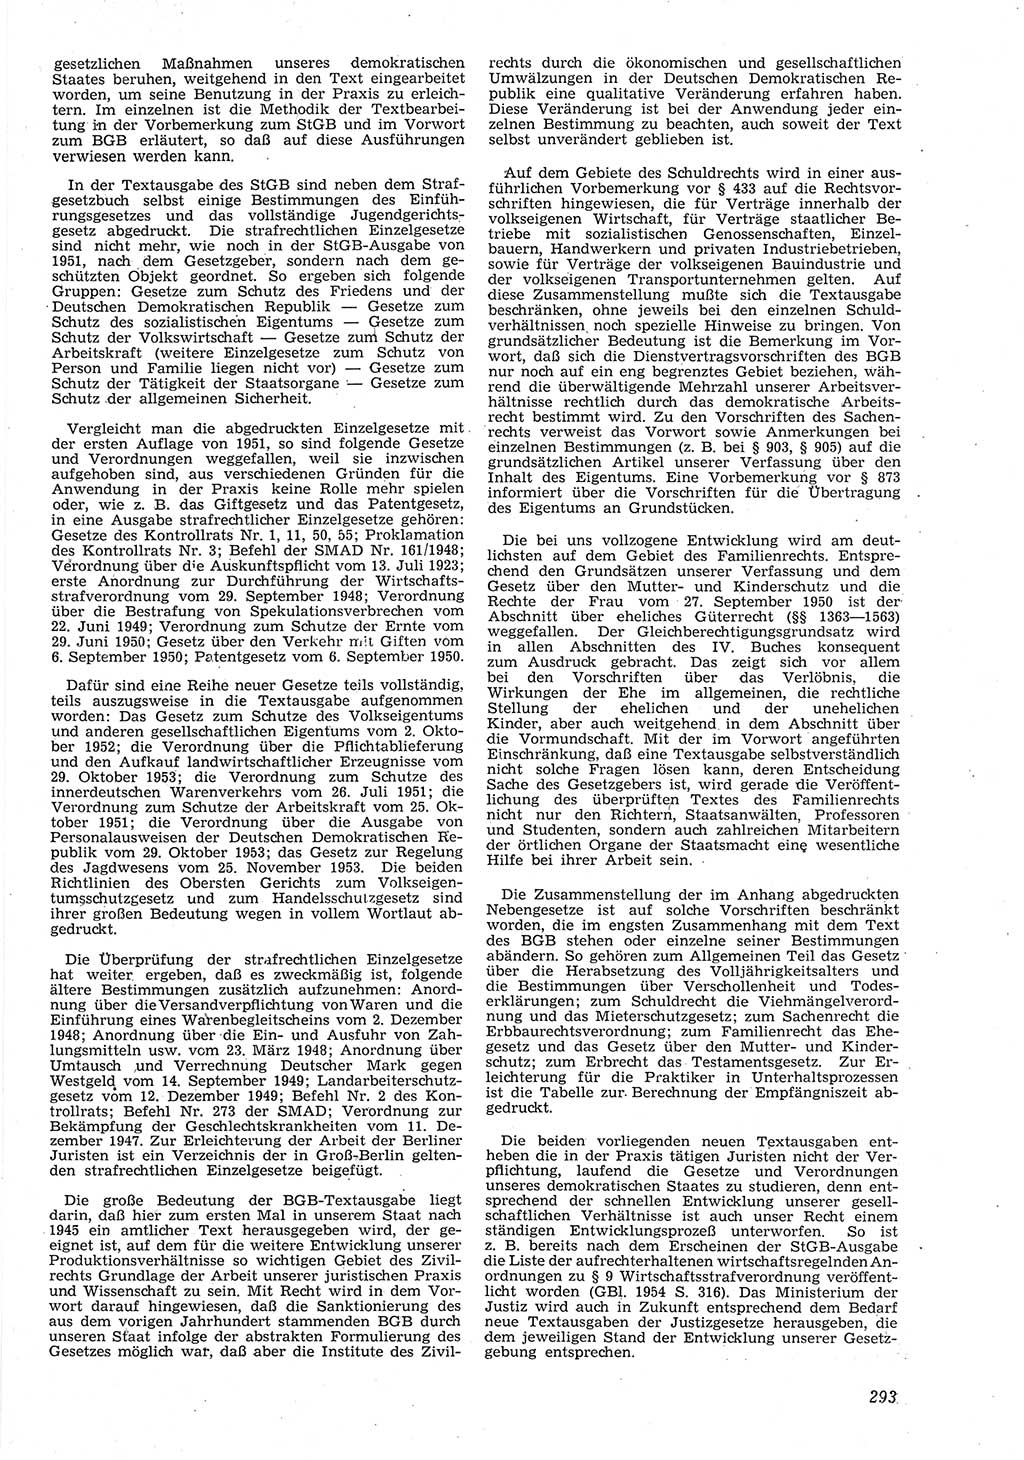 Neue Justiz (NJ), Zeitschrift für Recht und Rechtswissenschaft [Deutsche Demokratische Republik (DDR)], 8. Jahrgang 1954, Seite 293 (NJ DDR 1954, S. 293)